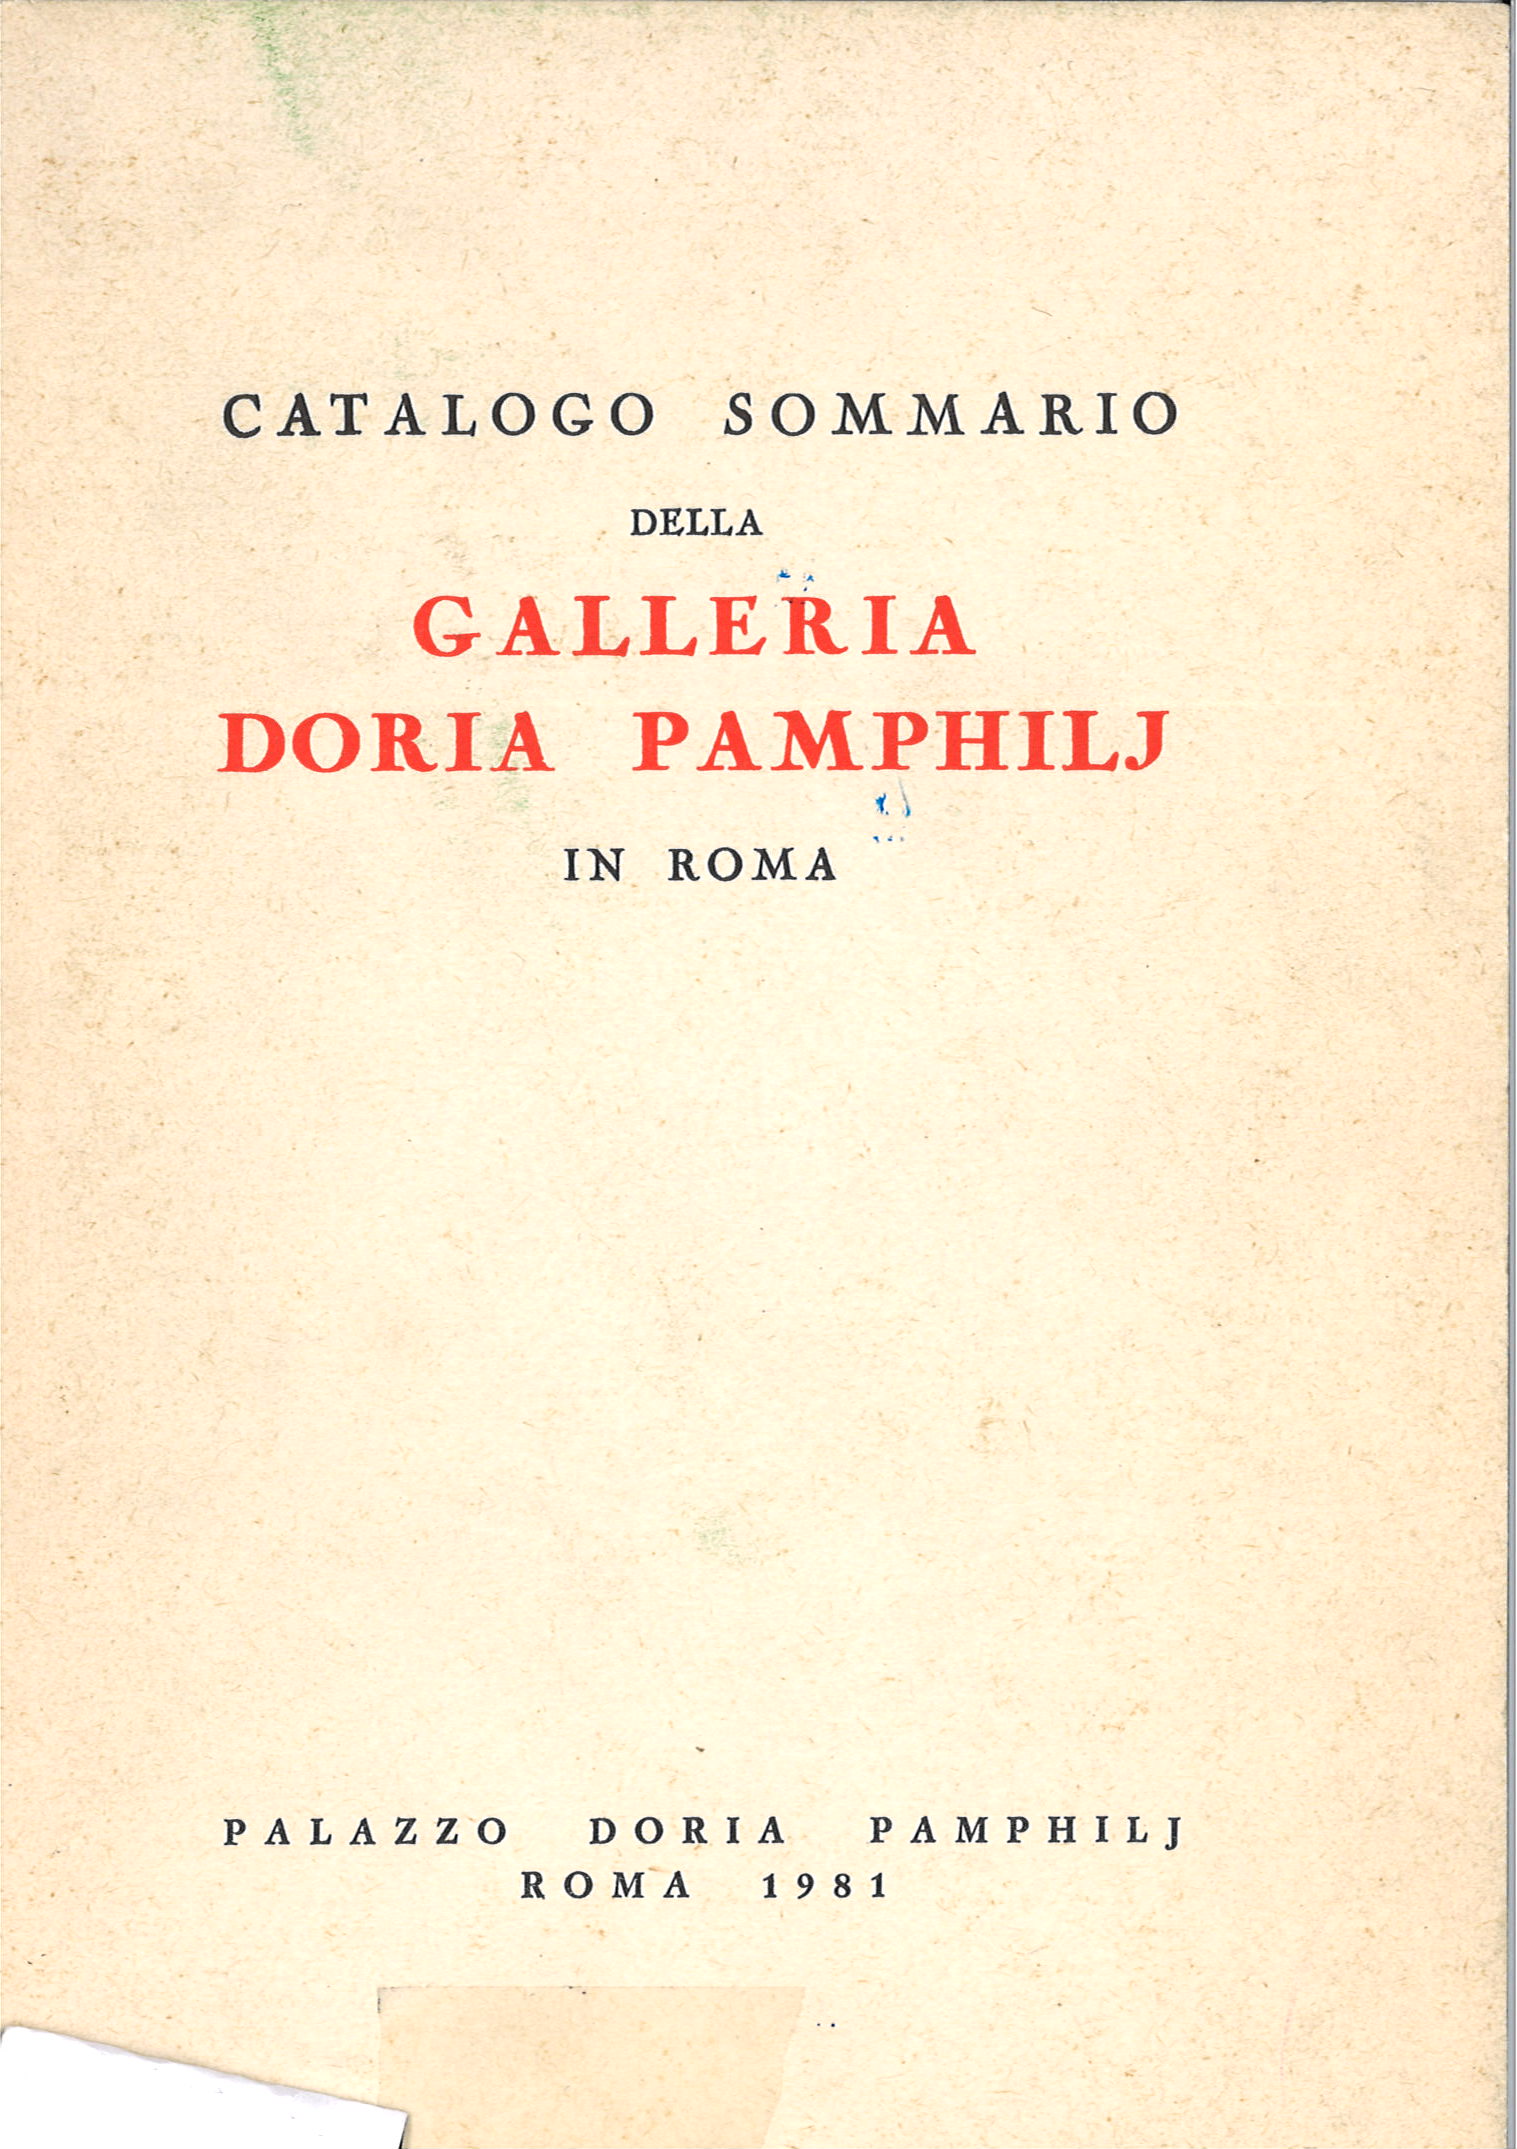 Catalogo Sommario della Galleria Doria Pamphilj in Roma-image